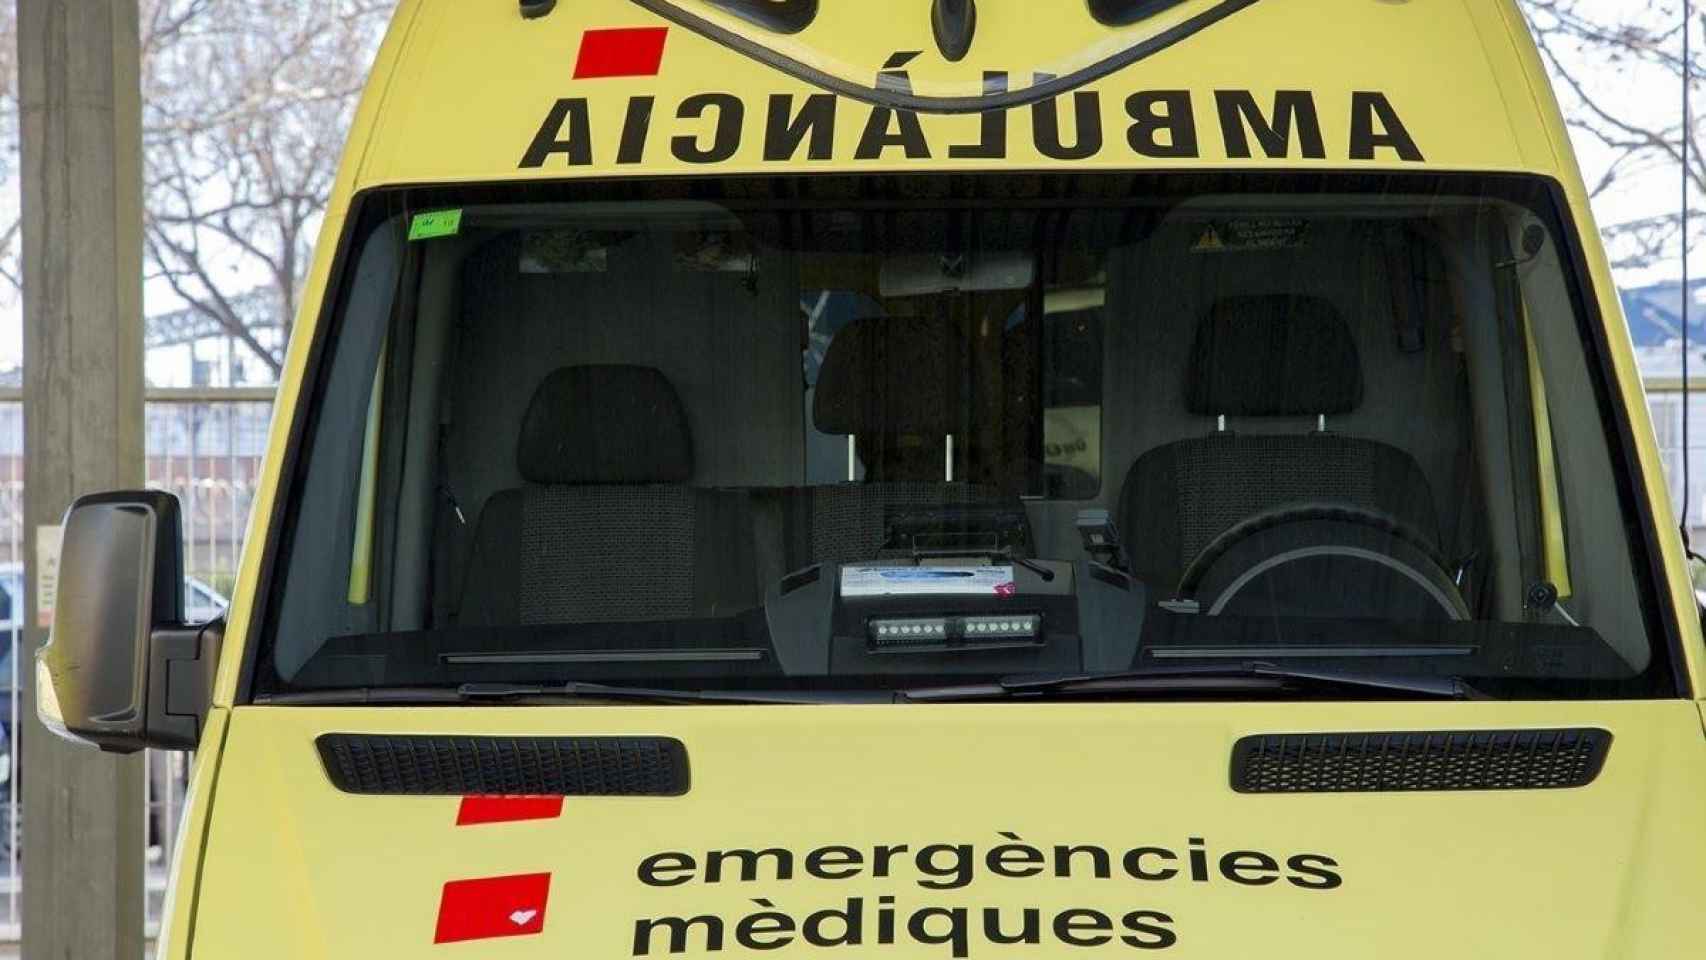 Vehículo del servicio de emergencias médicas como los que han intervenido en el accidente mortal en Tarragona / SEM